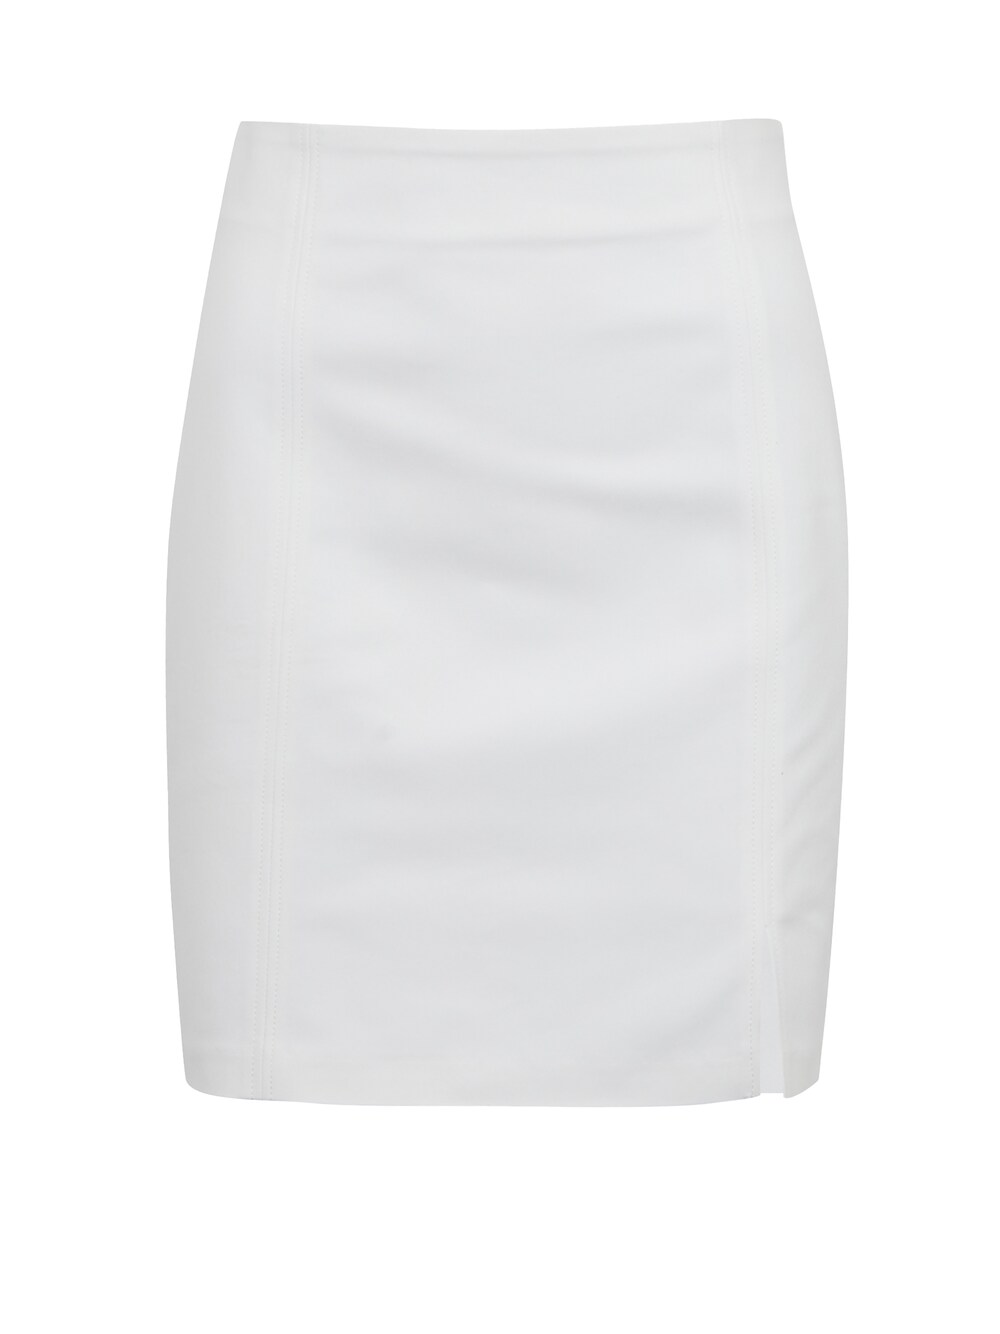 Юбка Orsay, белый юбка orsay с принтом 42 размер